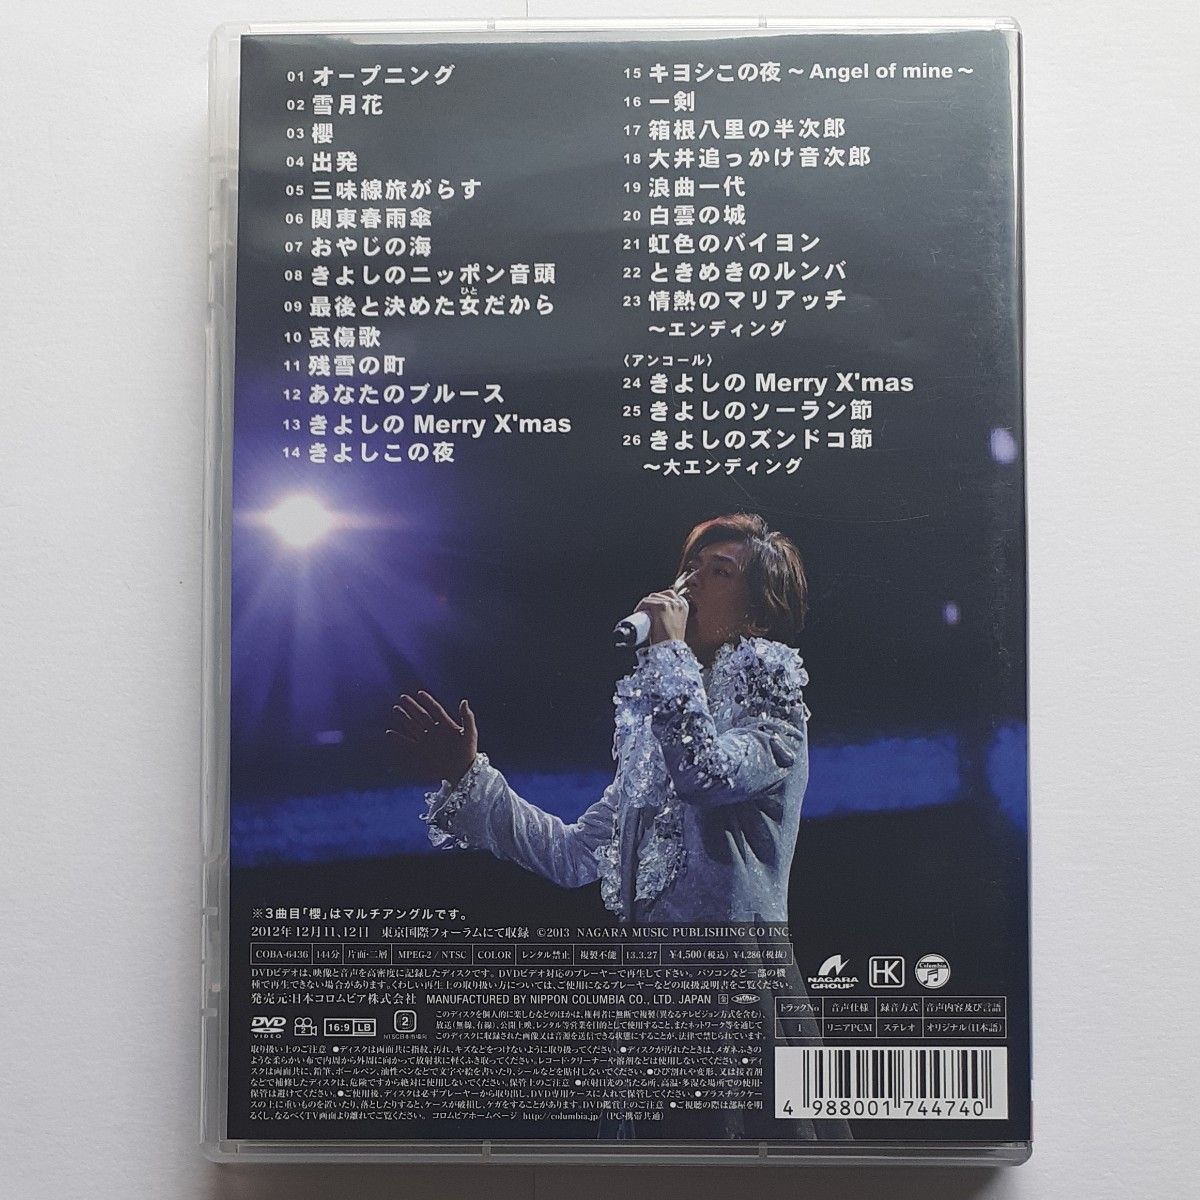 氷川きよしスペシャルコンサート2012 きよしこの夜Vol.12 [DVD]